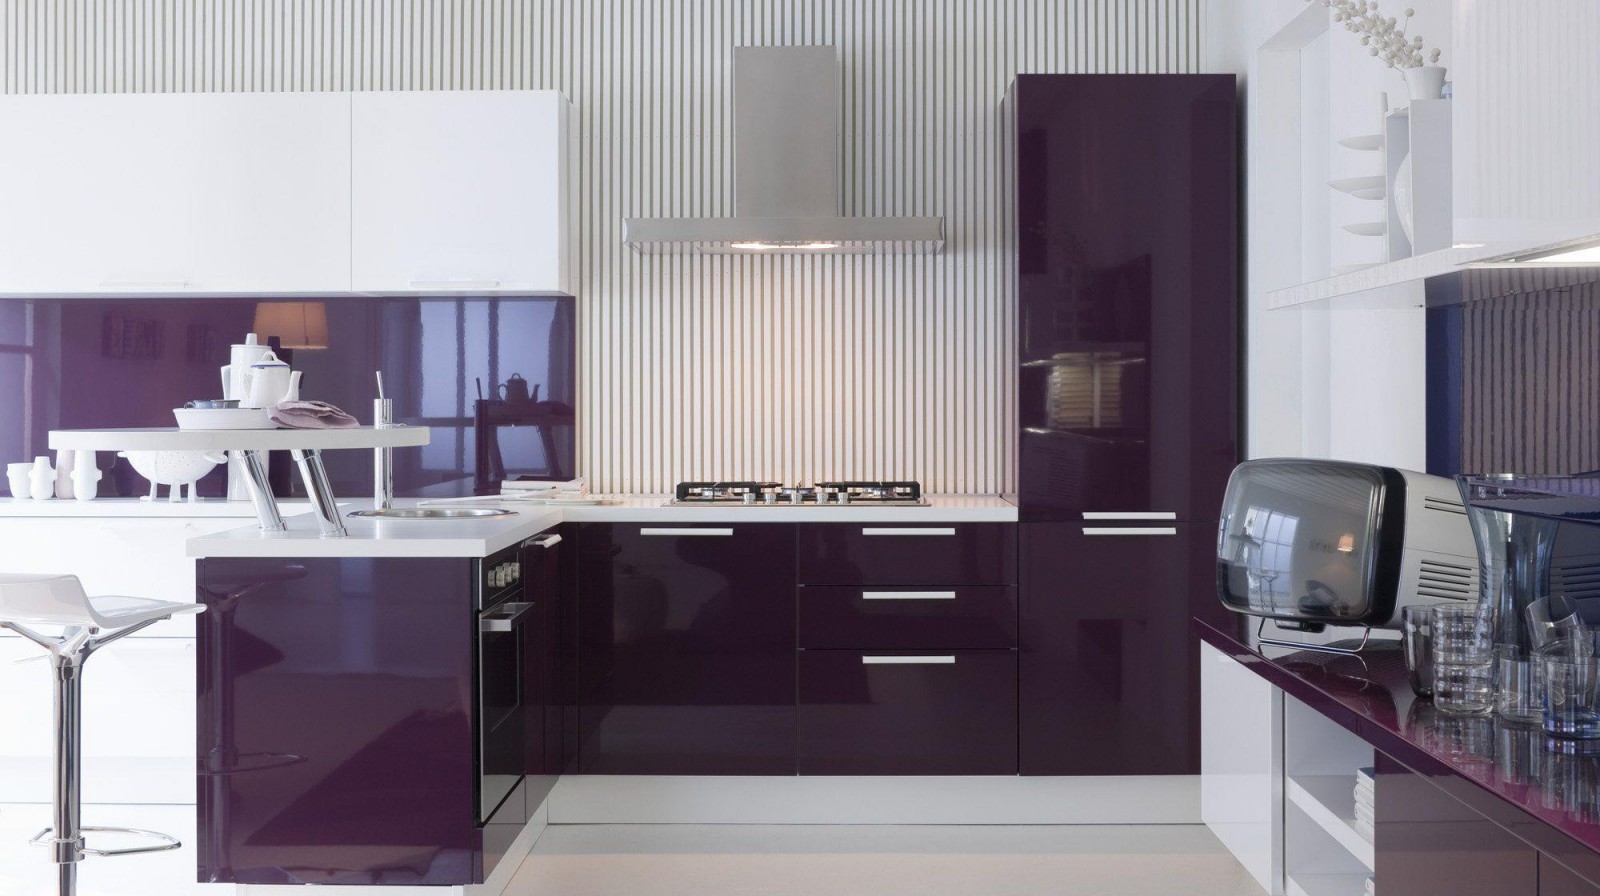 unusual kitchen design in purple